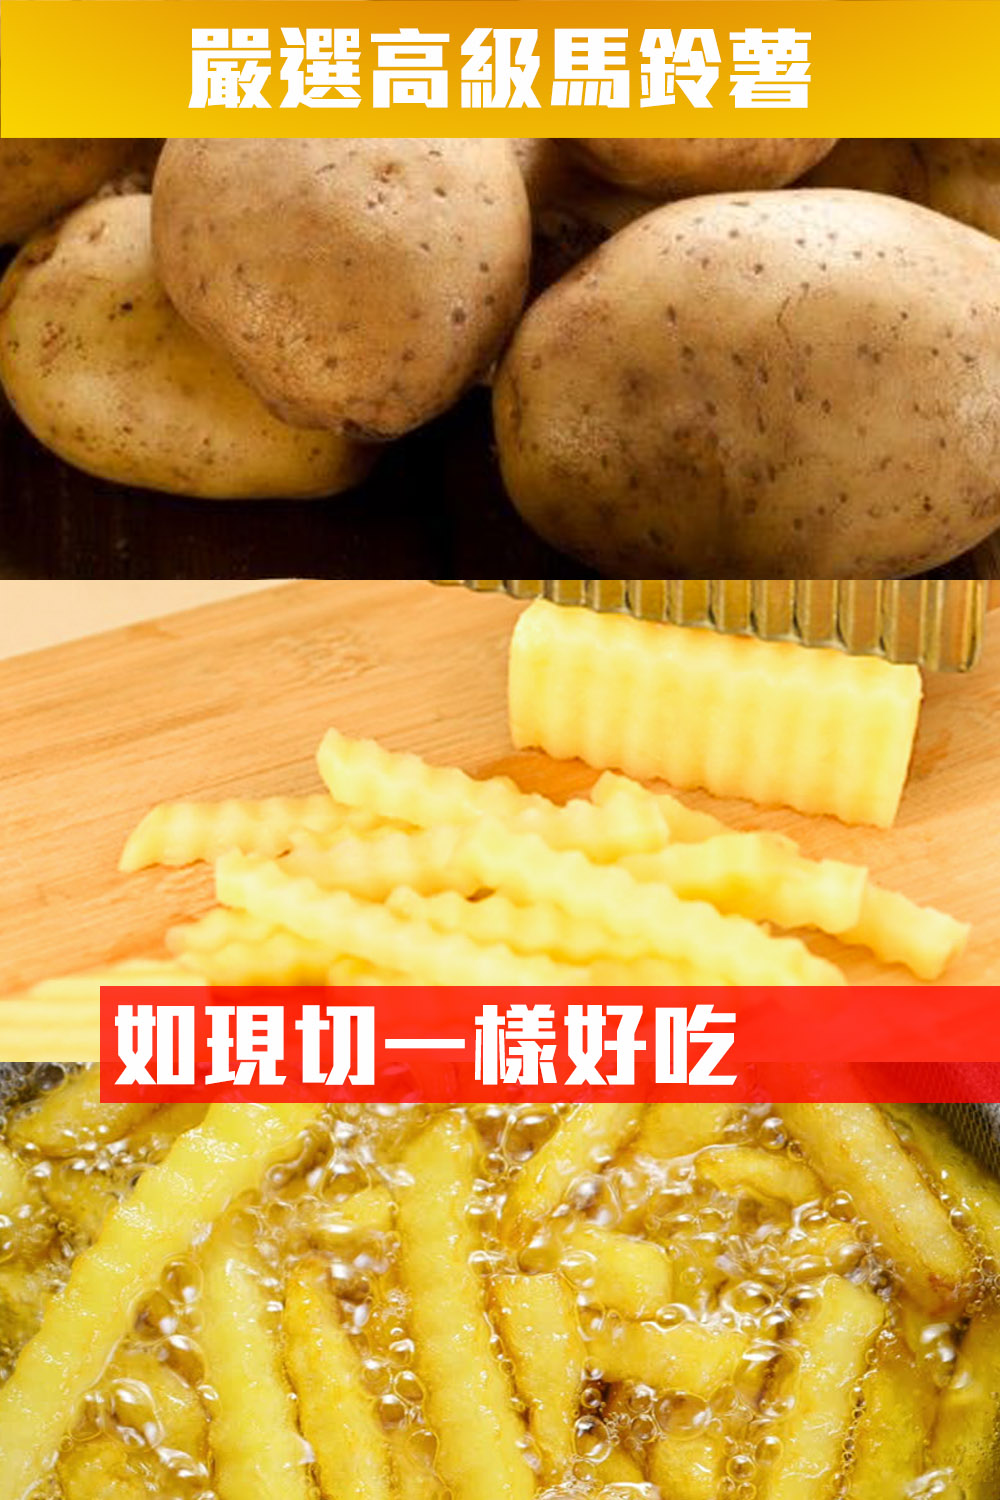       【鮮綠生活】金黃波浪薯條(300g/包 共12包)